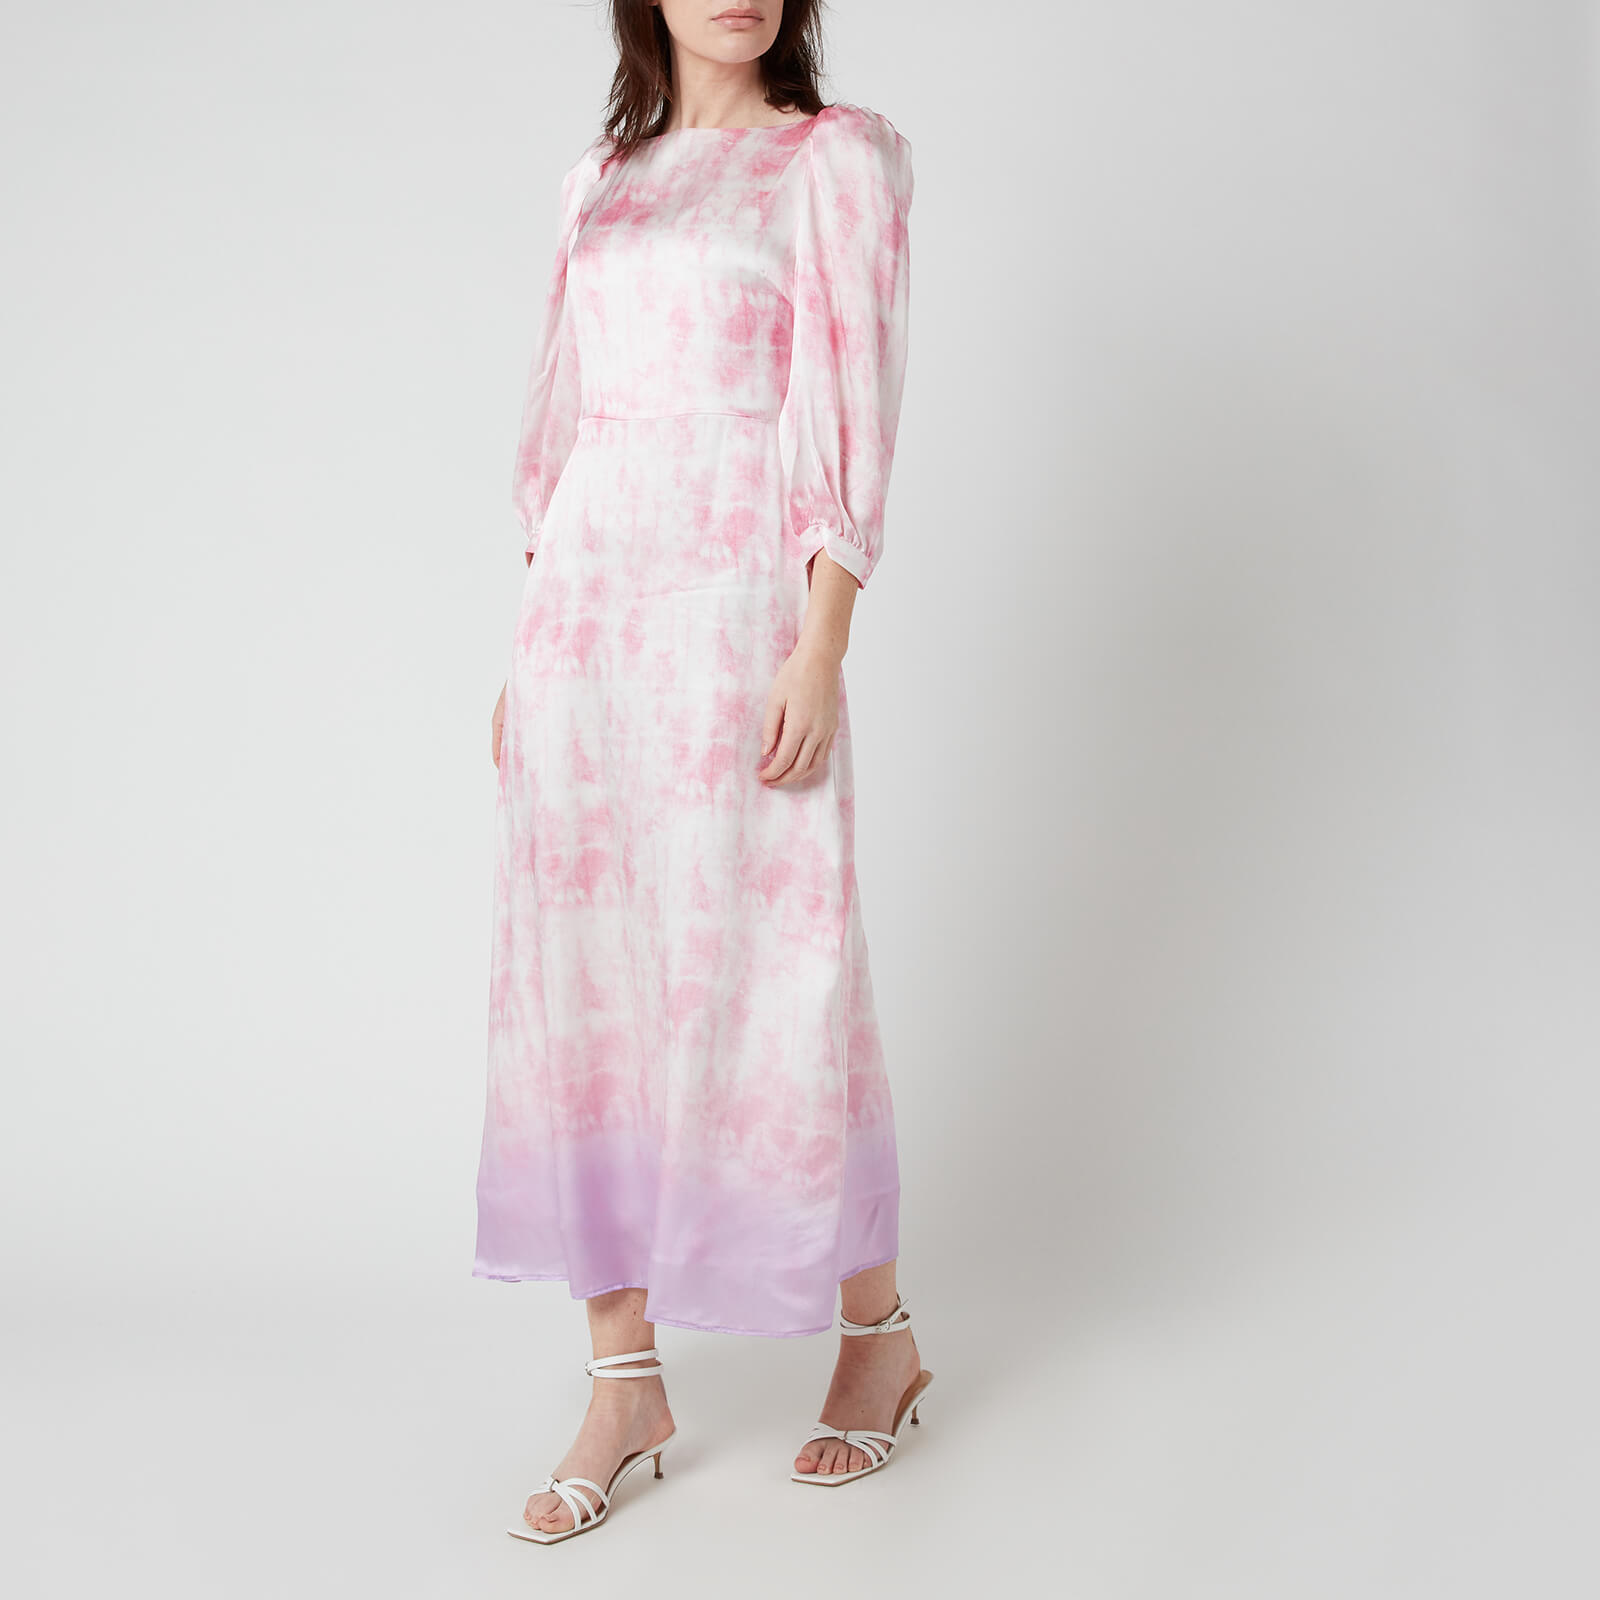 Olivia Rubin Women's Lara Dress - Tie Dye - UK 8